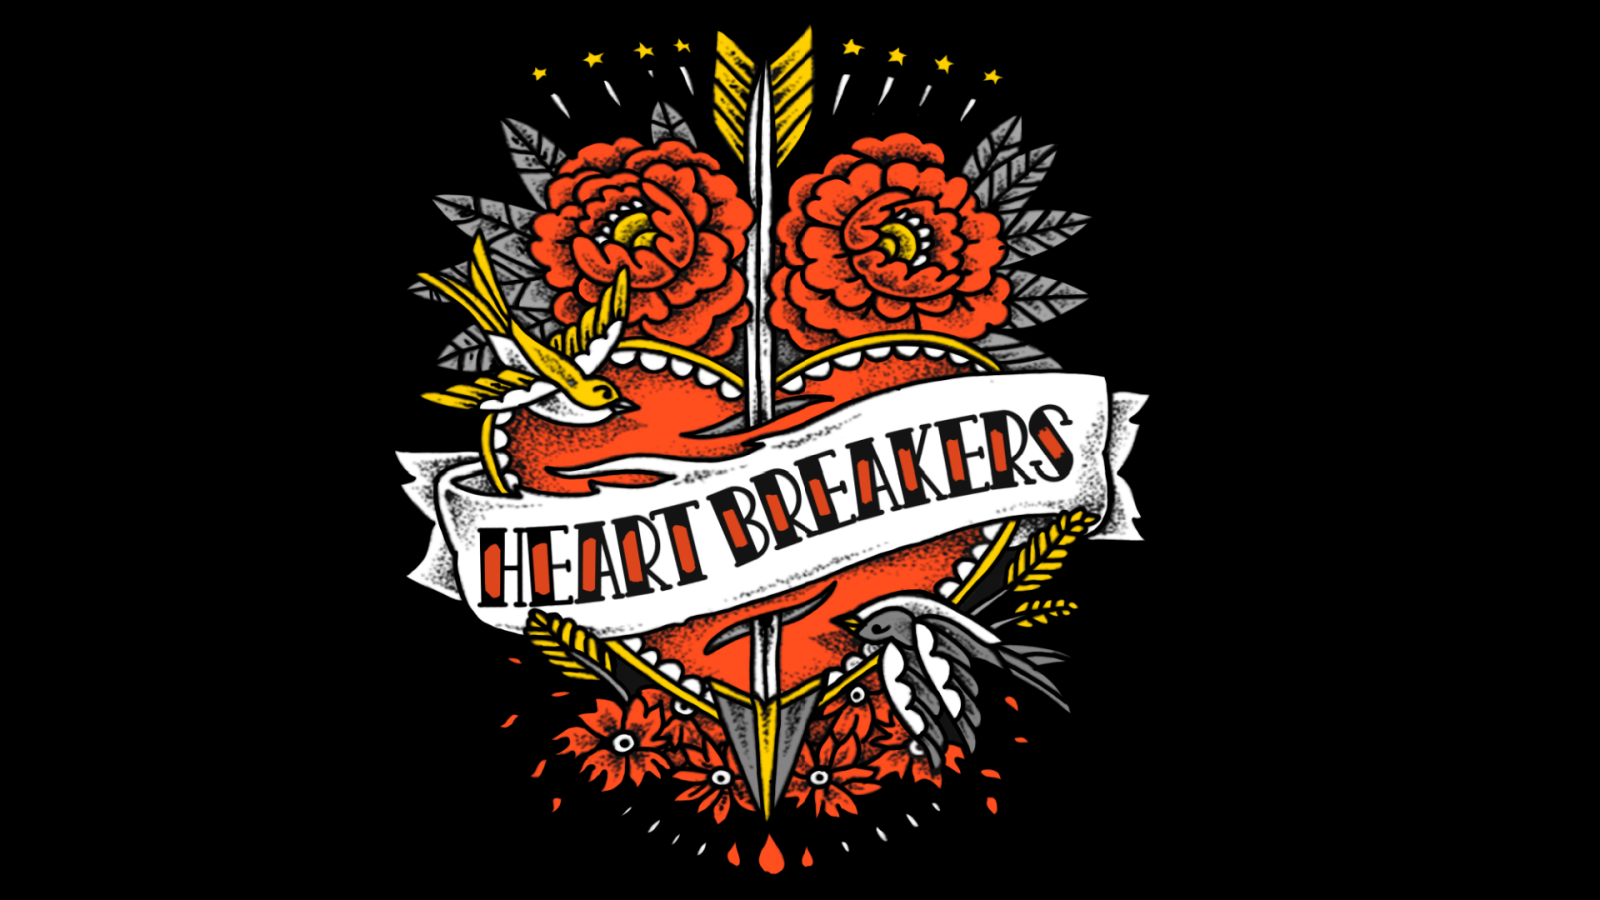 Heart Breakers